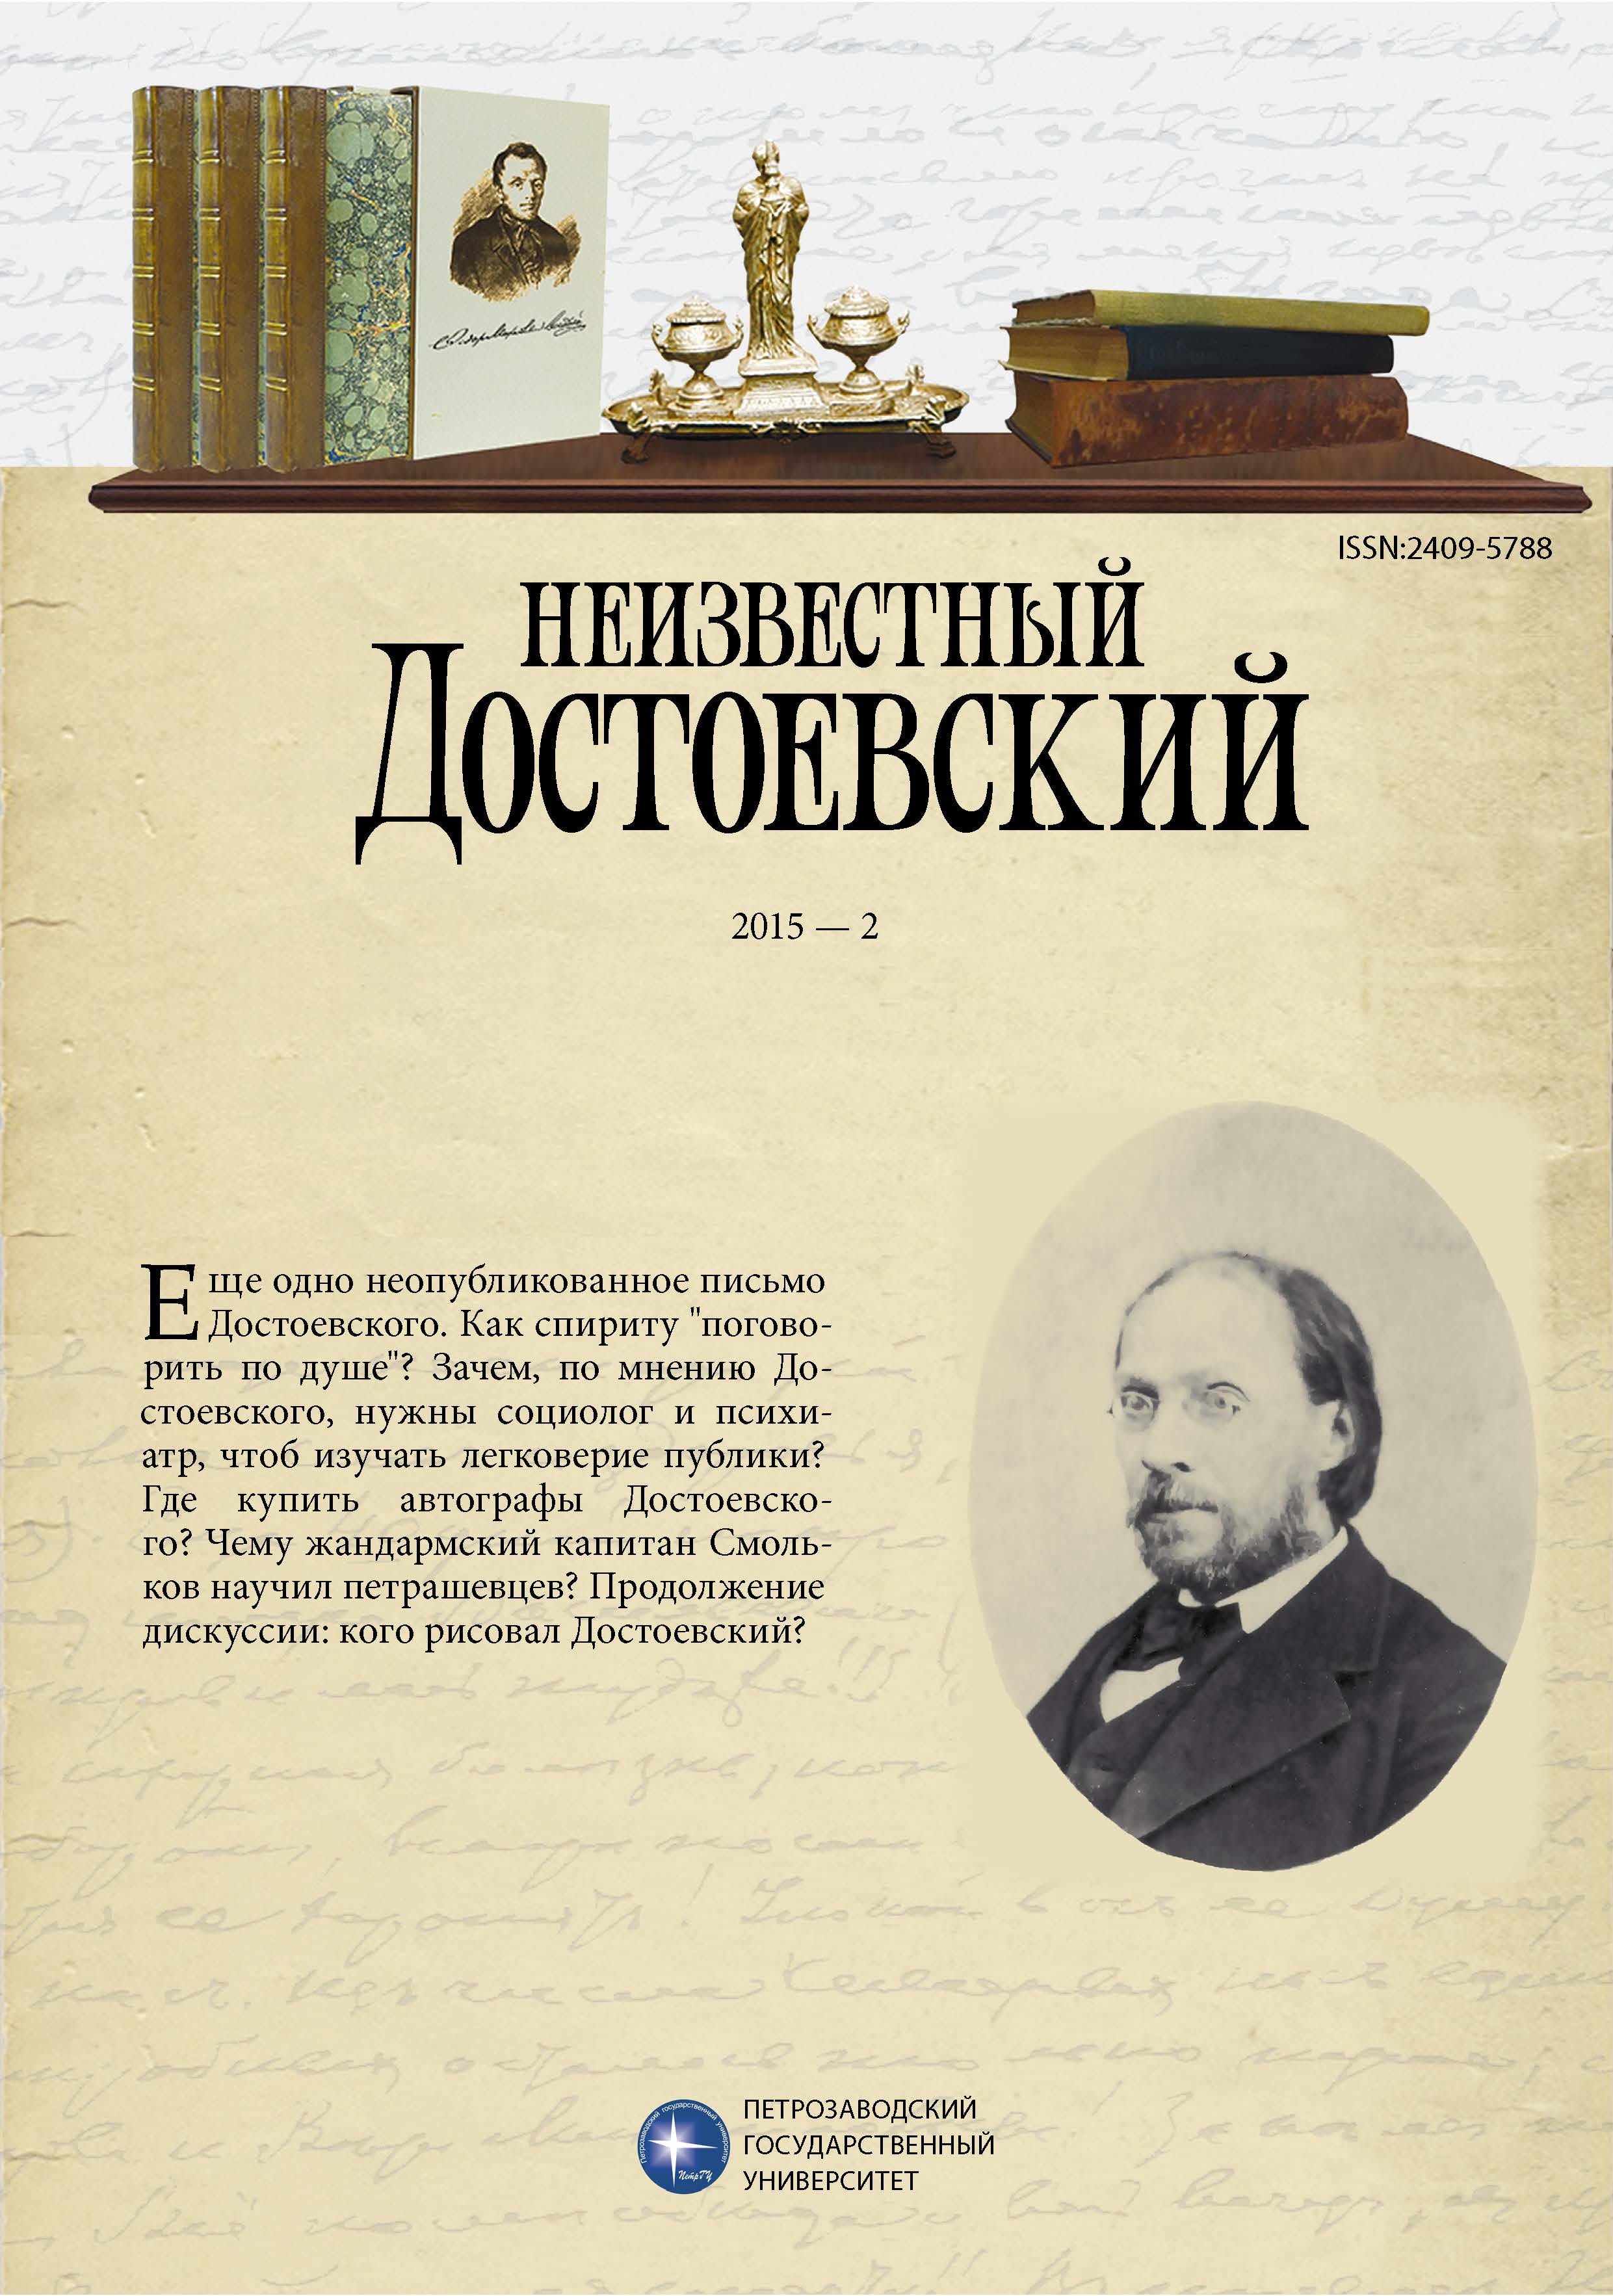 Достоевский и Вагнер: биография в переписке